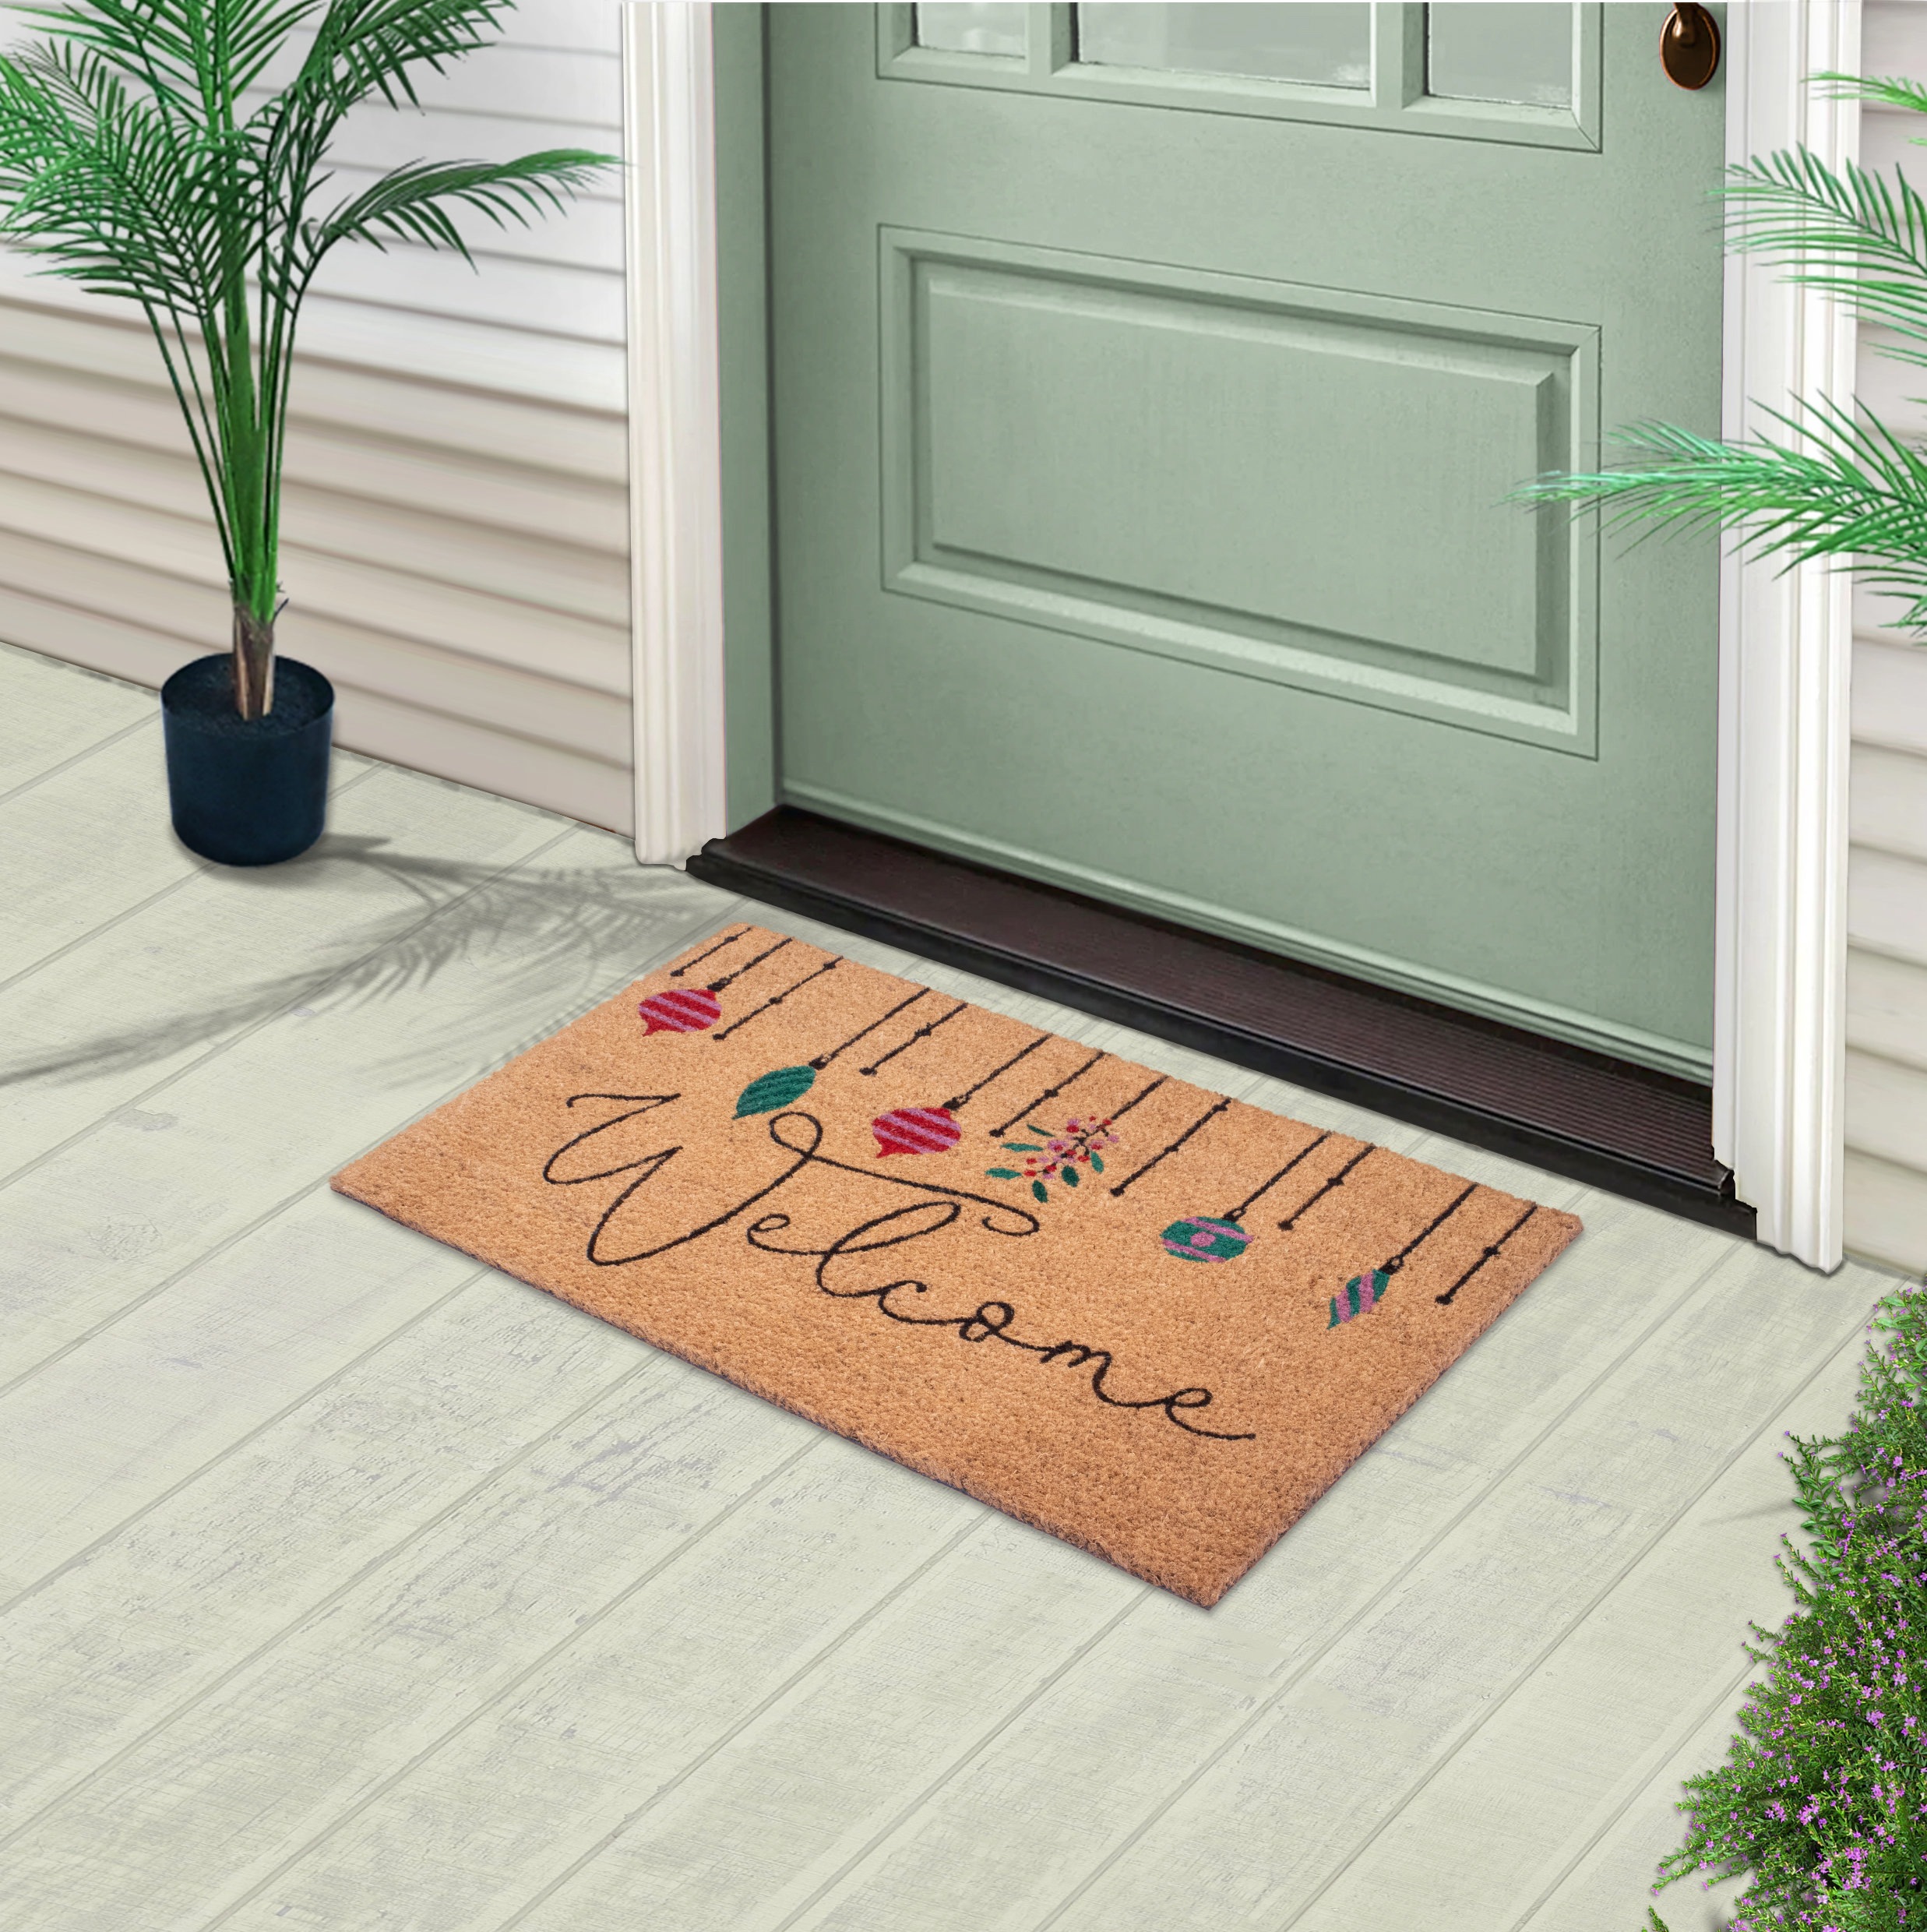 https://assets.wfcdn.com/im/45240117/compr-r85/2346/234667757/hannahrose-welcome-natural-coir-doormat-printed-28-in-x-18-in-indoor-and-outdoor-non-slip-front-doormat.jpg